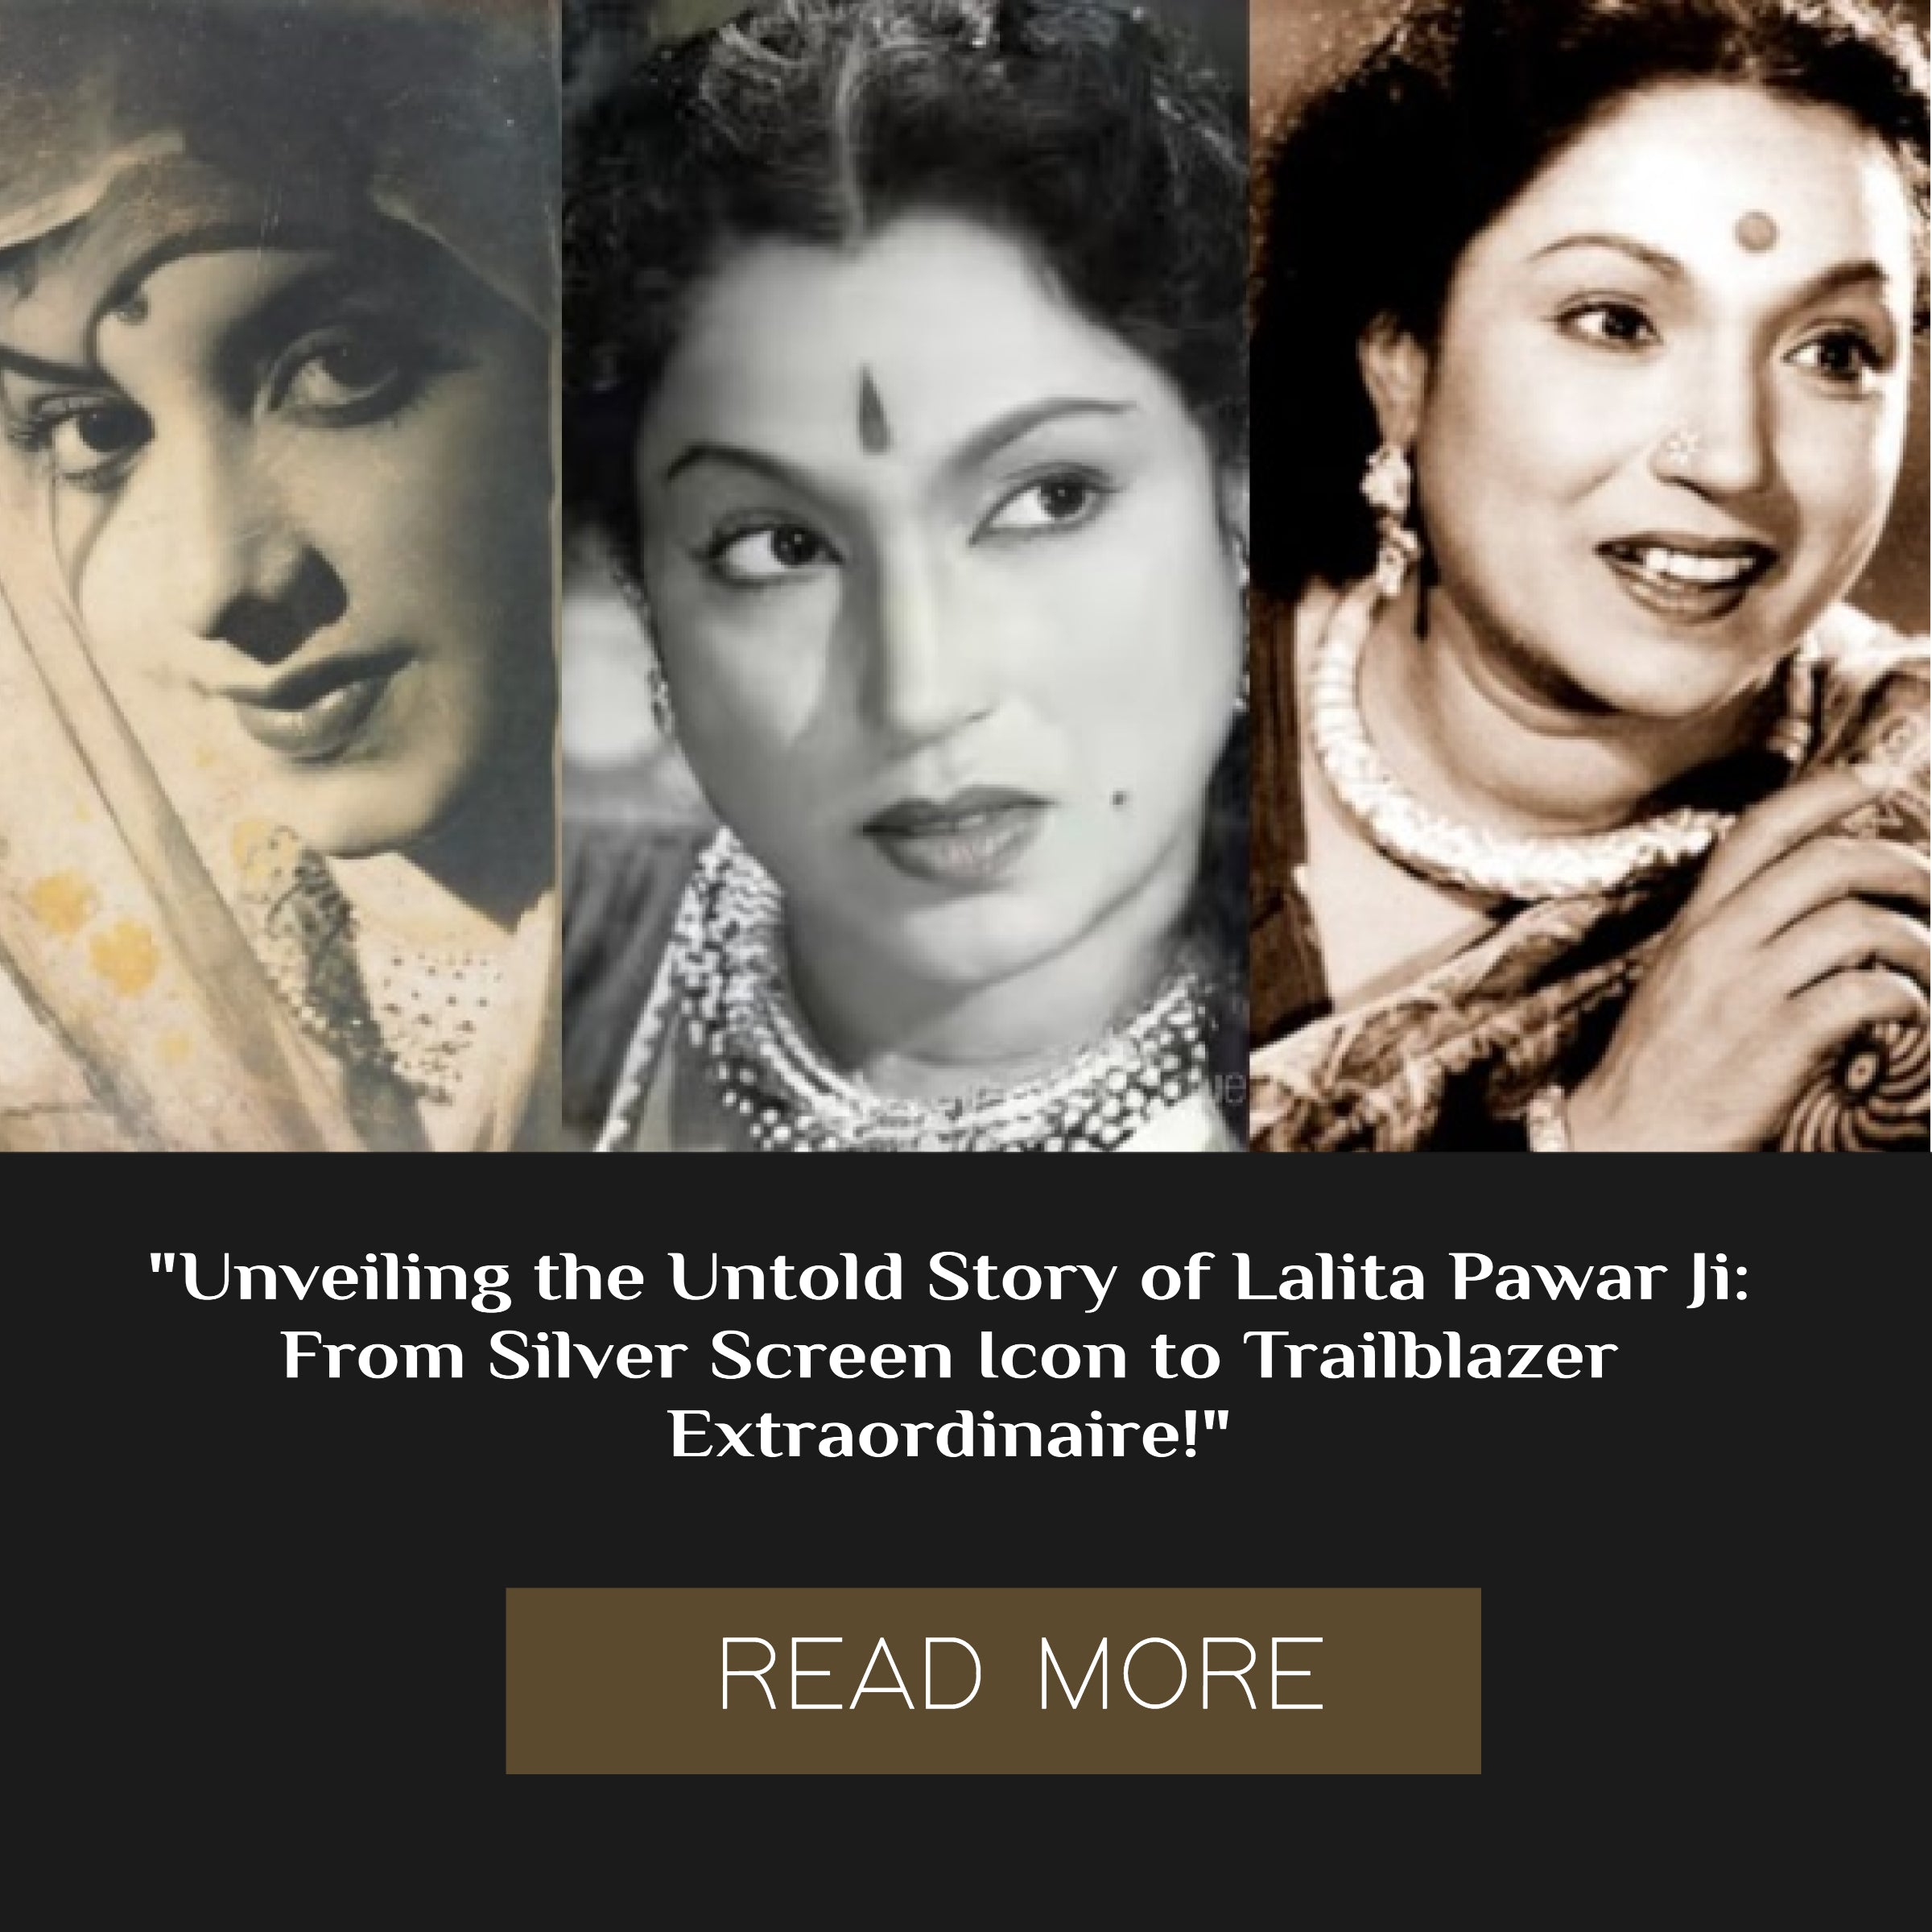 Lalita Pawar Ji: A Trailblazer in Indian Cinema